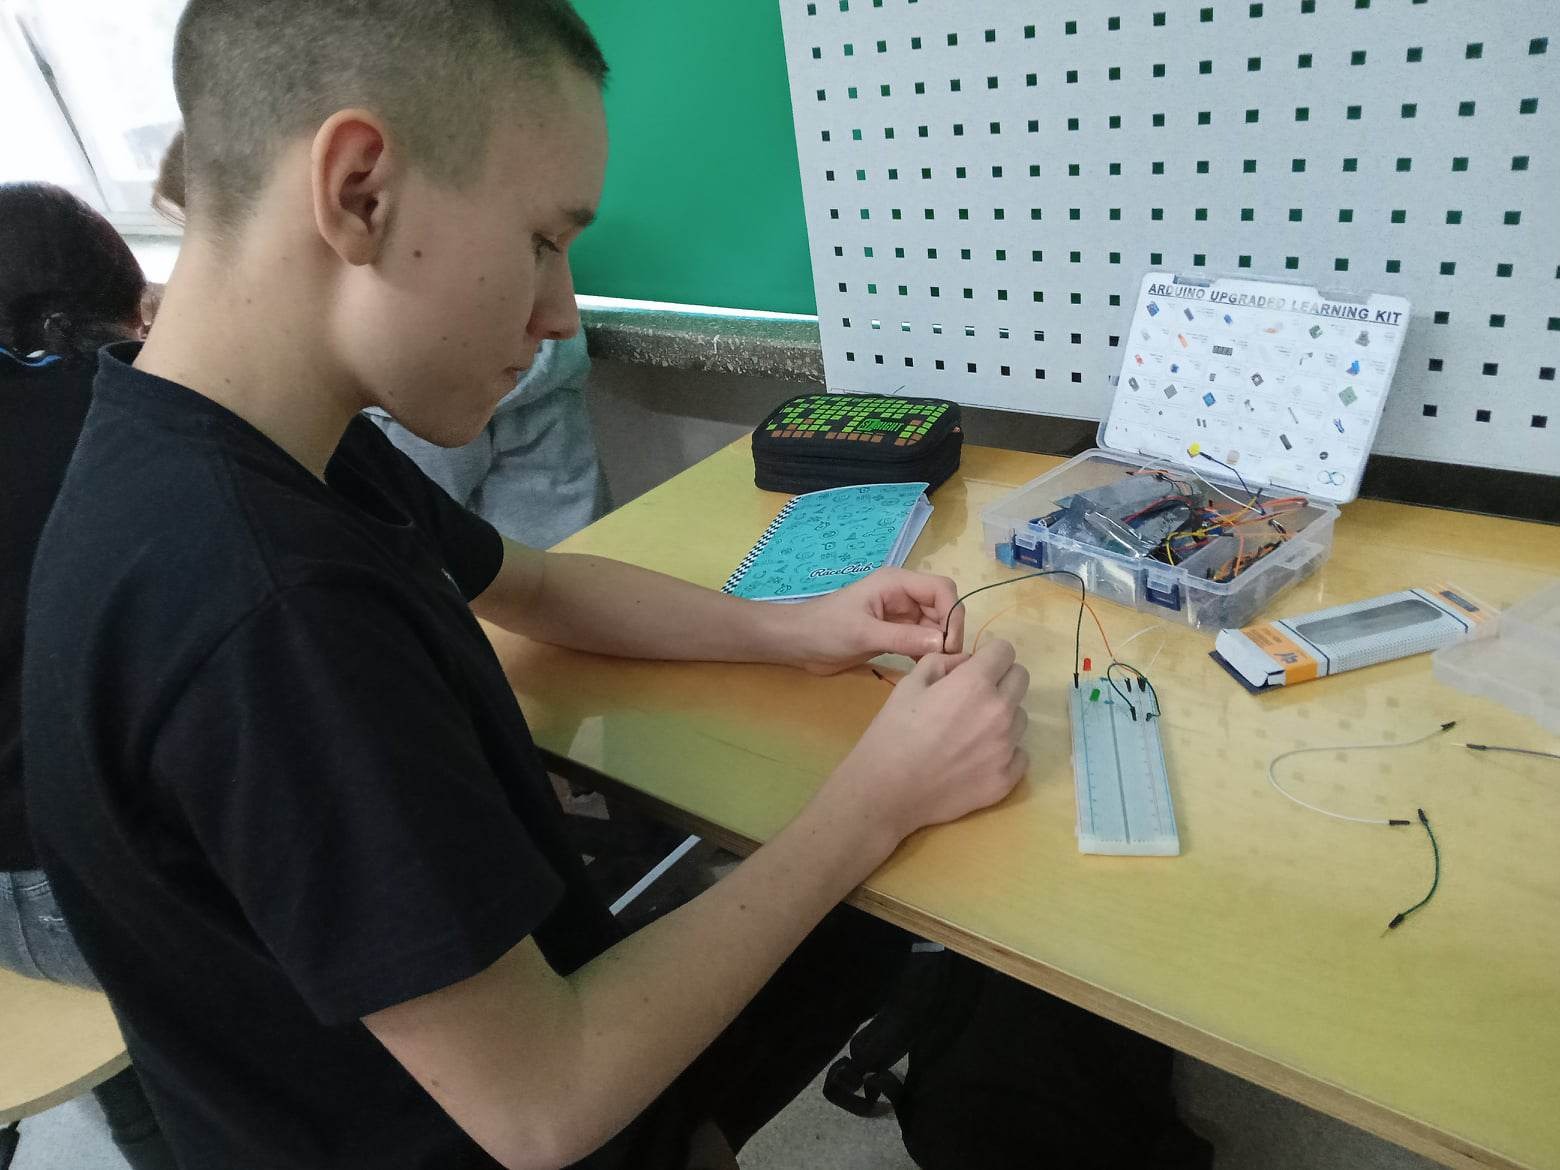 Zestaw Arduino montowany przez chłopca